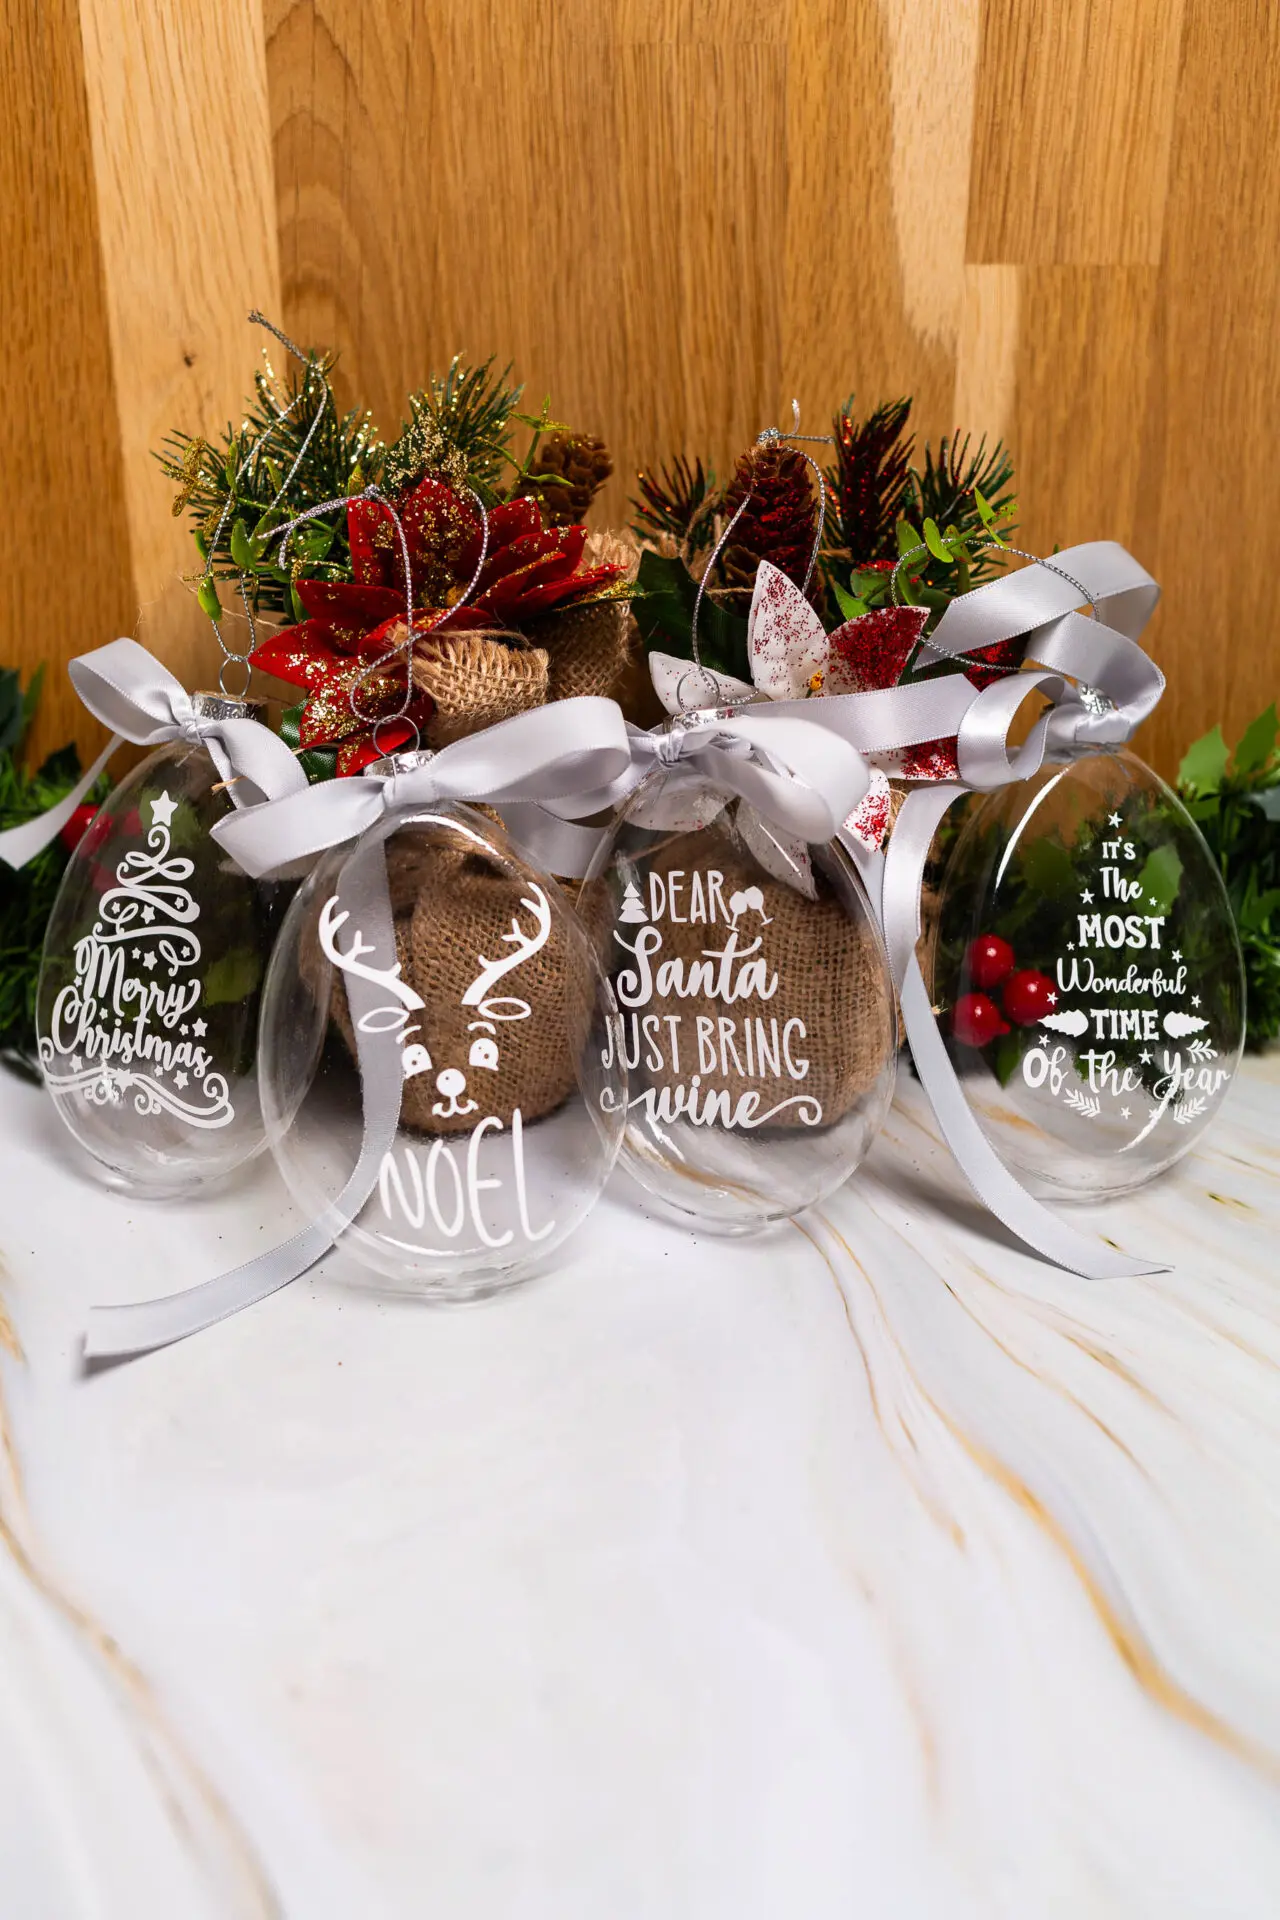 Boules de Sapin de Noël transparentes - Boules de Noël originales pour le sapin de Noël - Boutique en ligne d'idées cadeaux pour les fêtes de Noël et de décoration pour les fêtes de fin d'année.